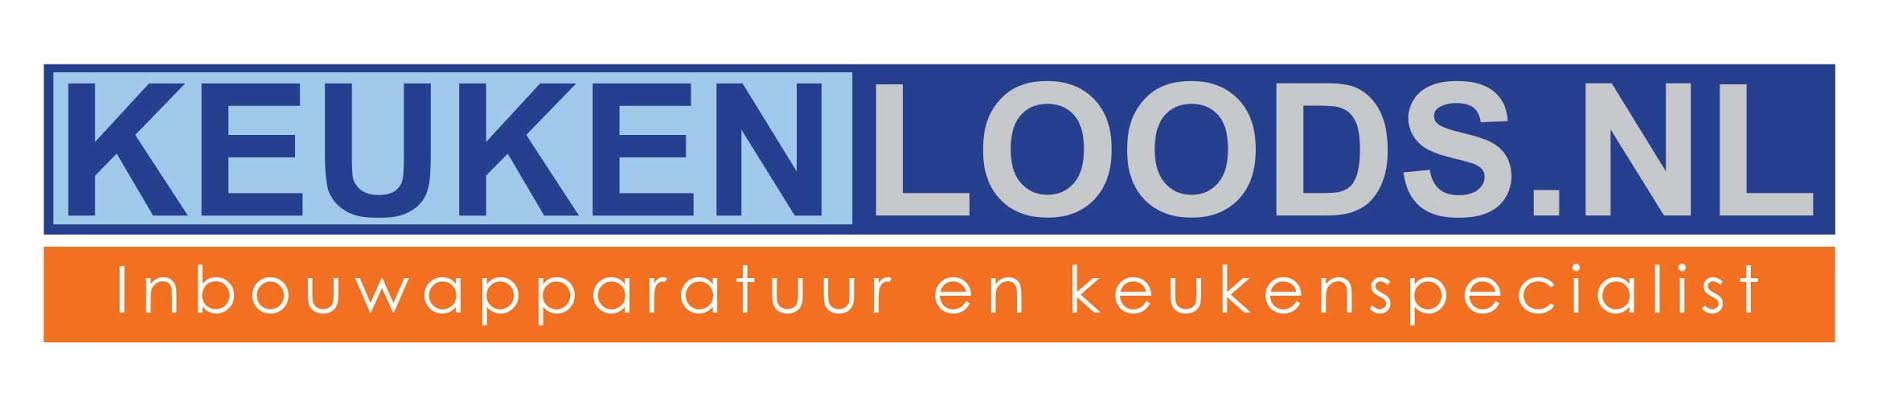 Keukenloods logo